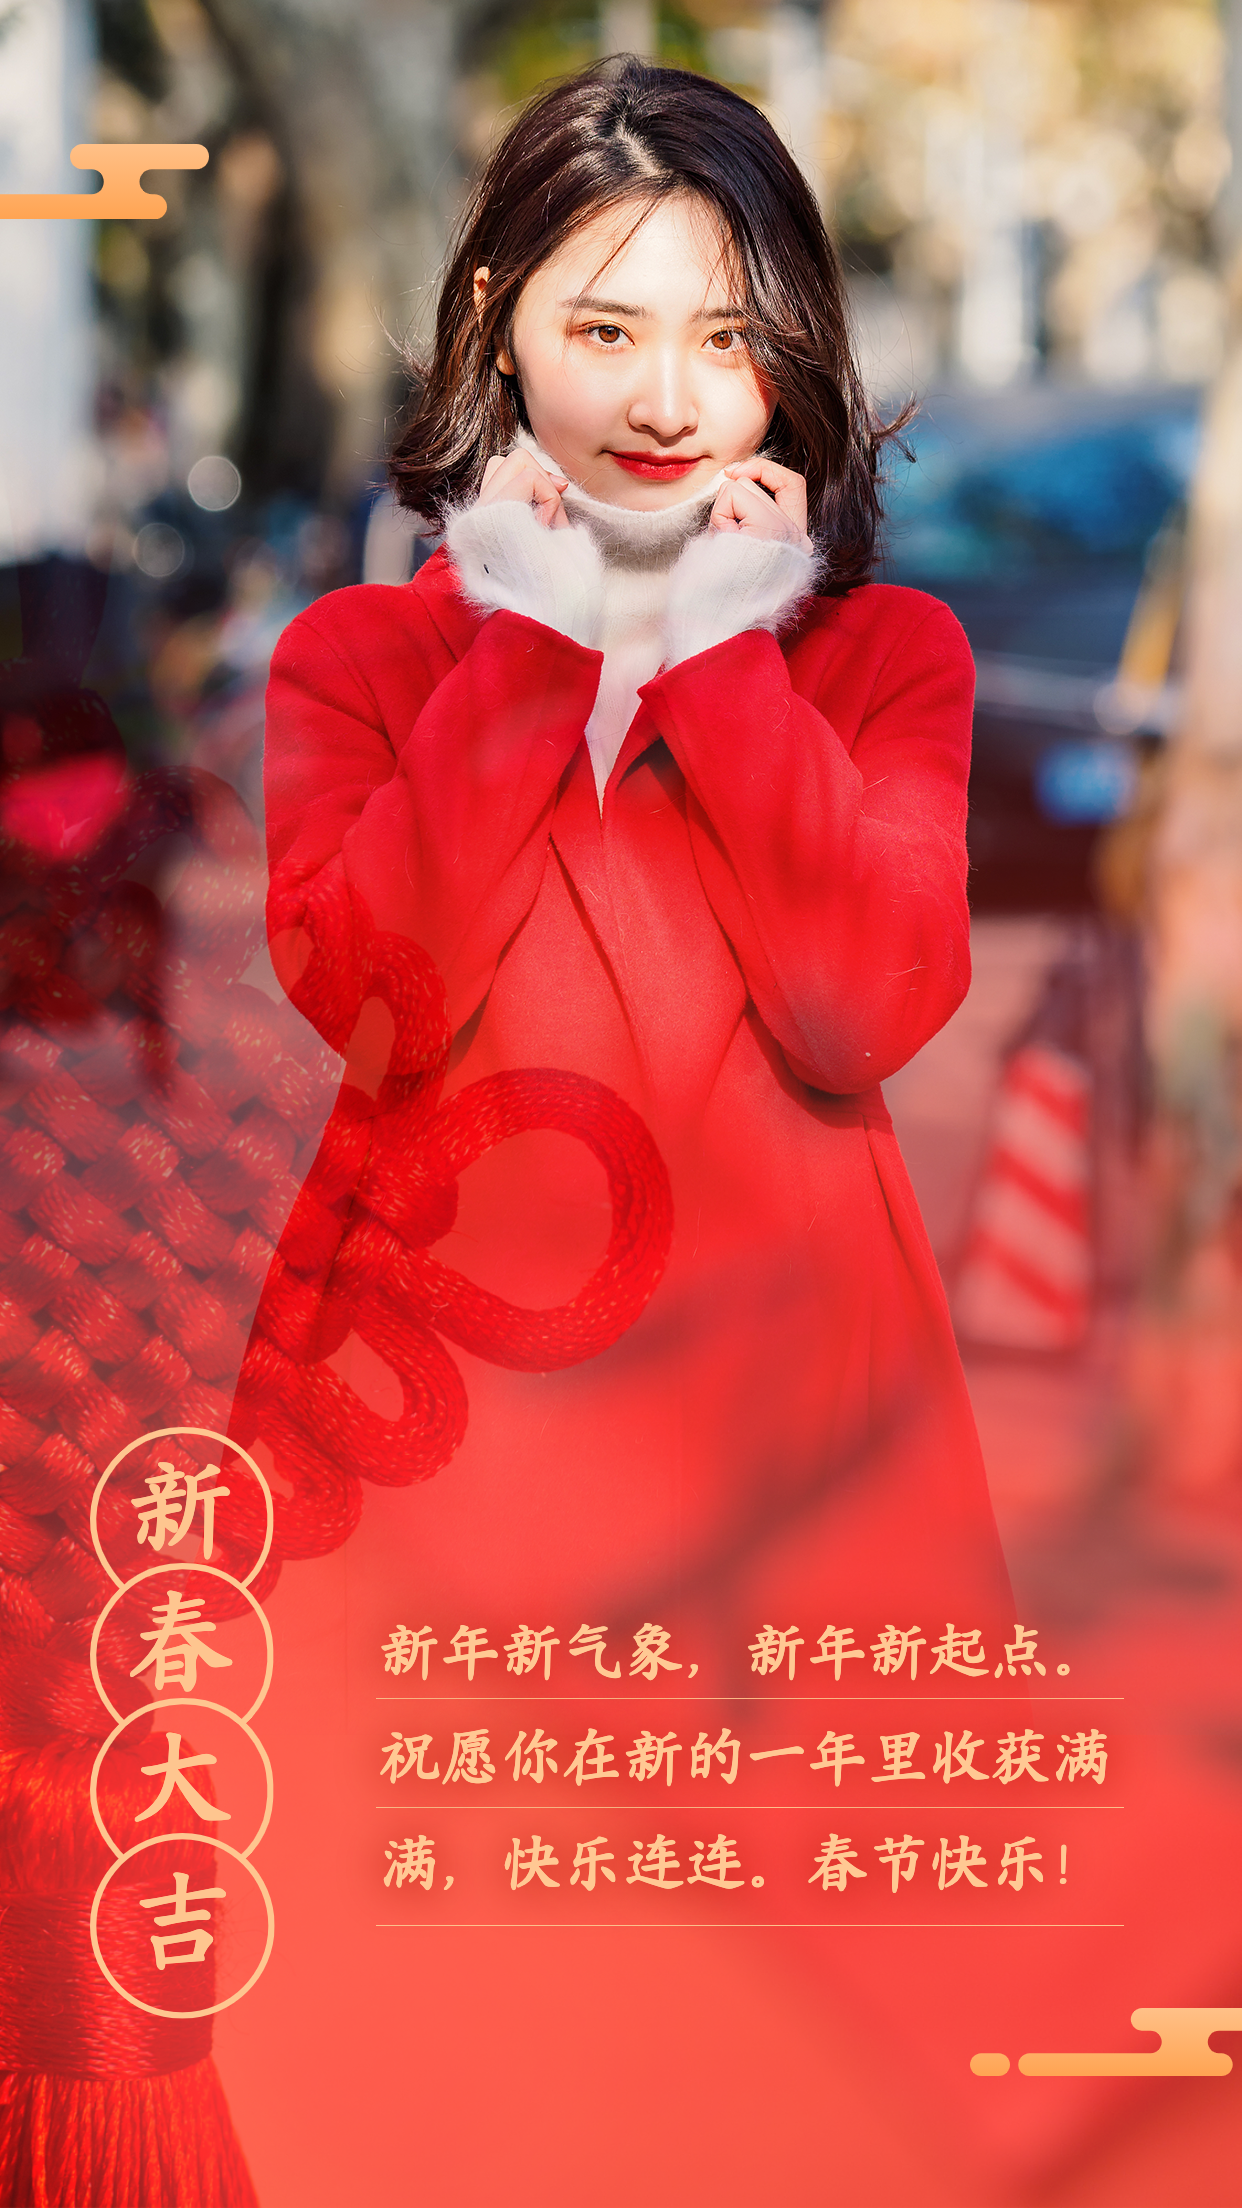 春节祝福融图晒照红色中国结预览效果